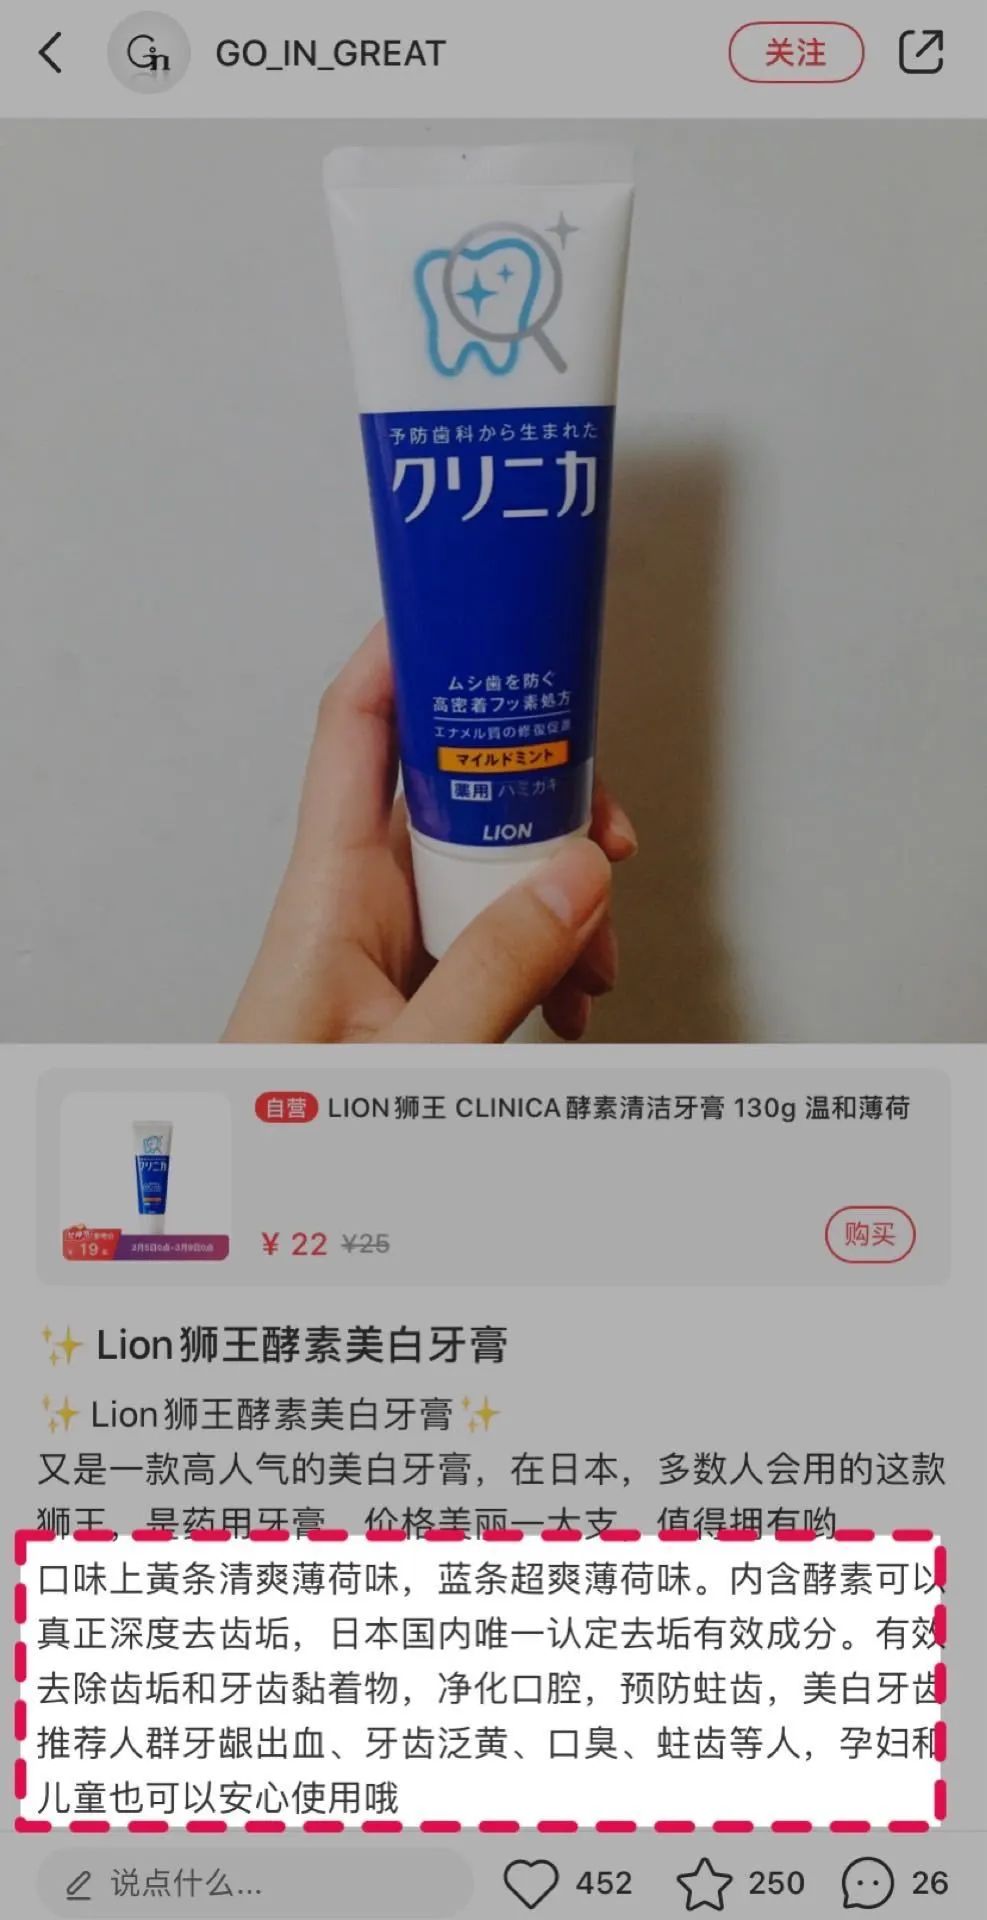 5.30团品Lion狮王酵素美白牙膏